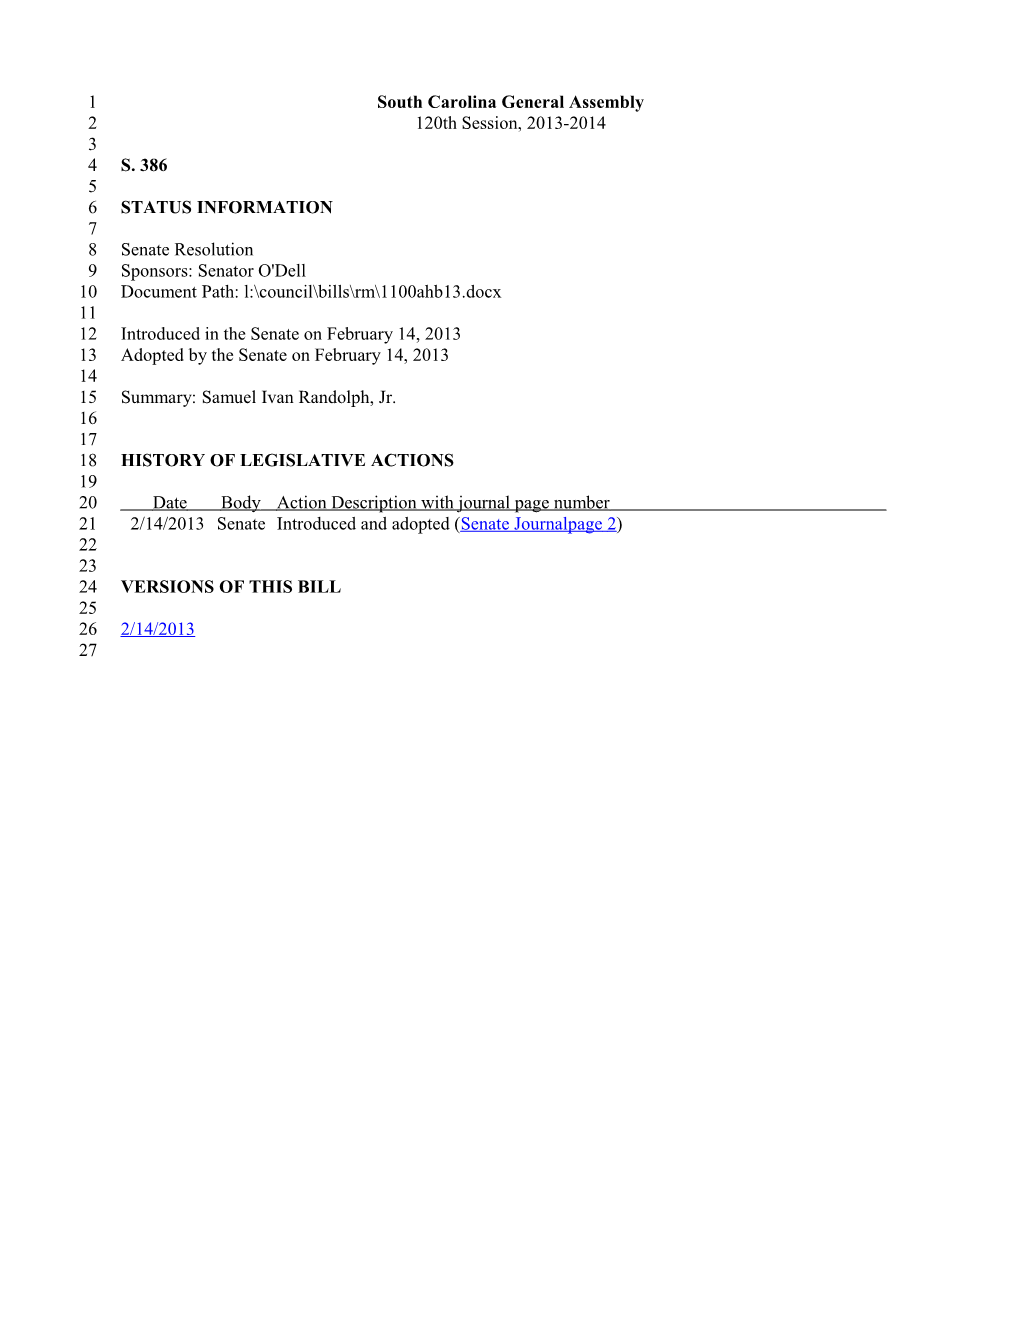 2013-2014 Bill 386: Samuel Ivan Randolph, Jr. - South Carolina Legislature Online